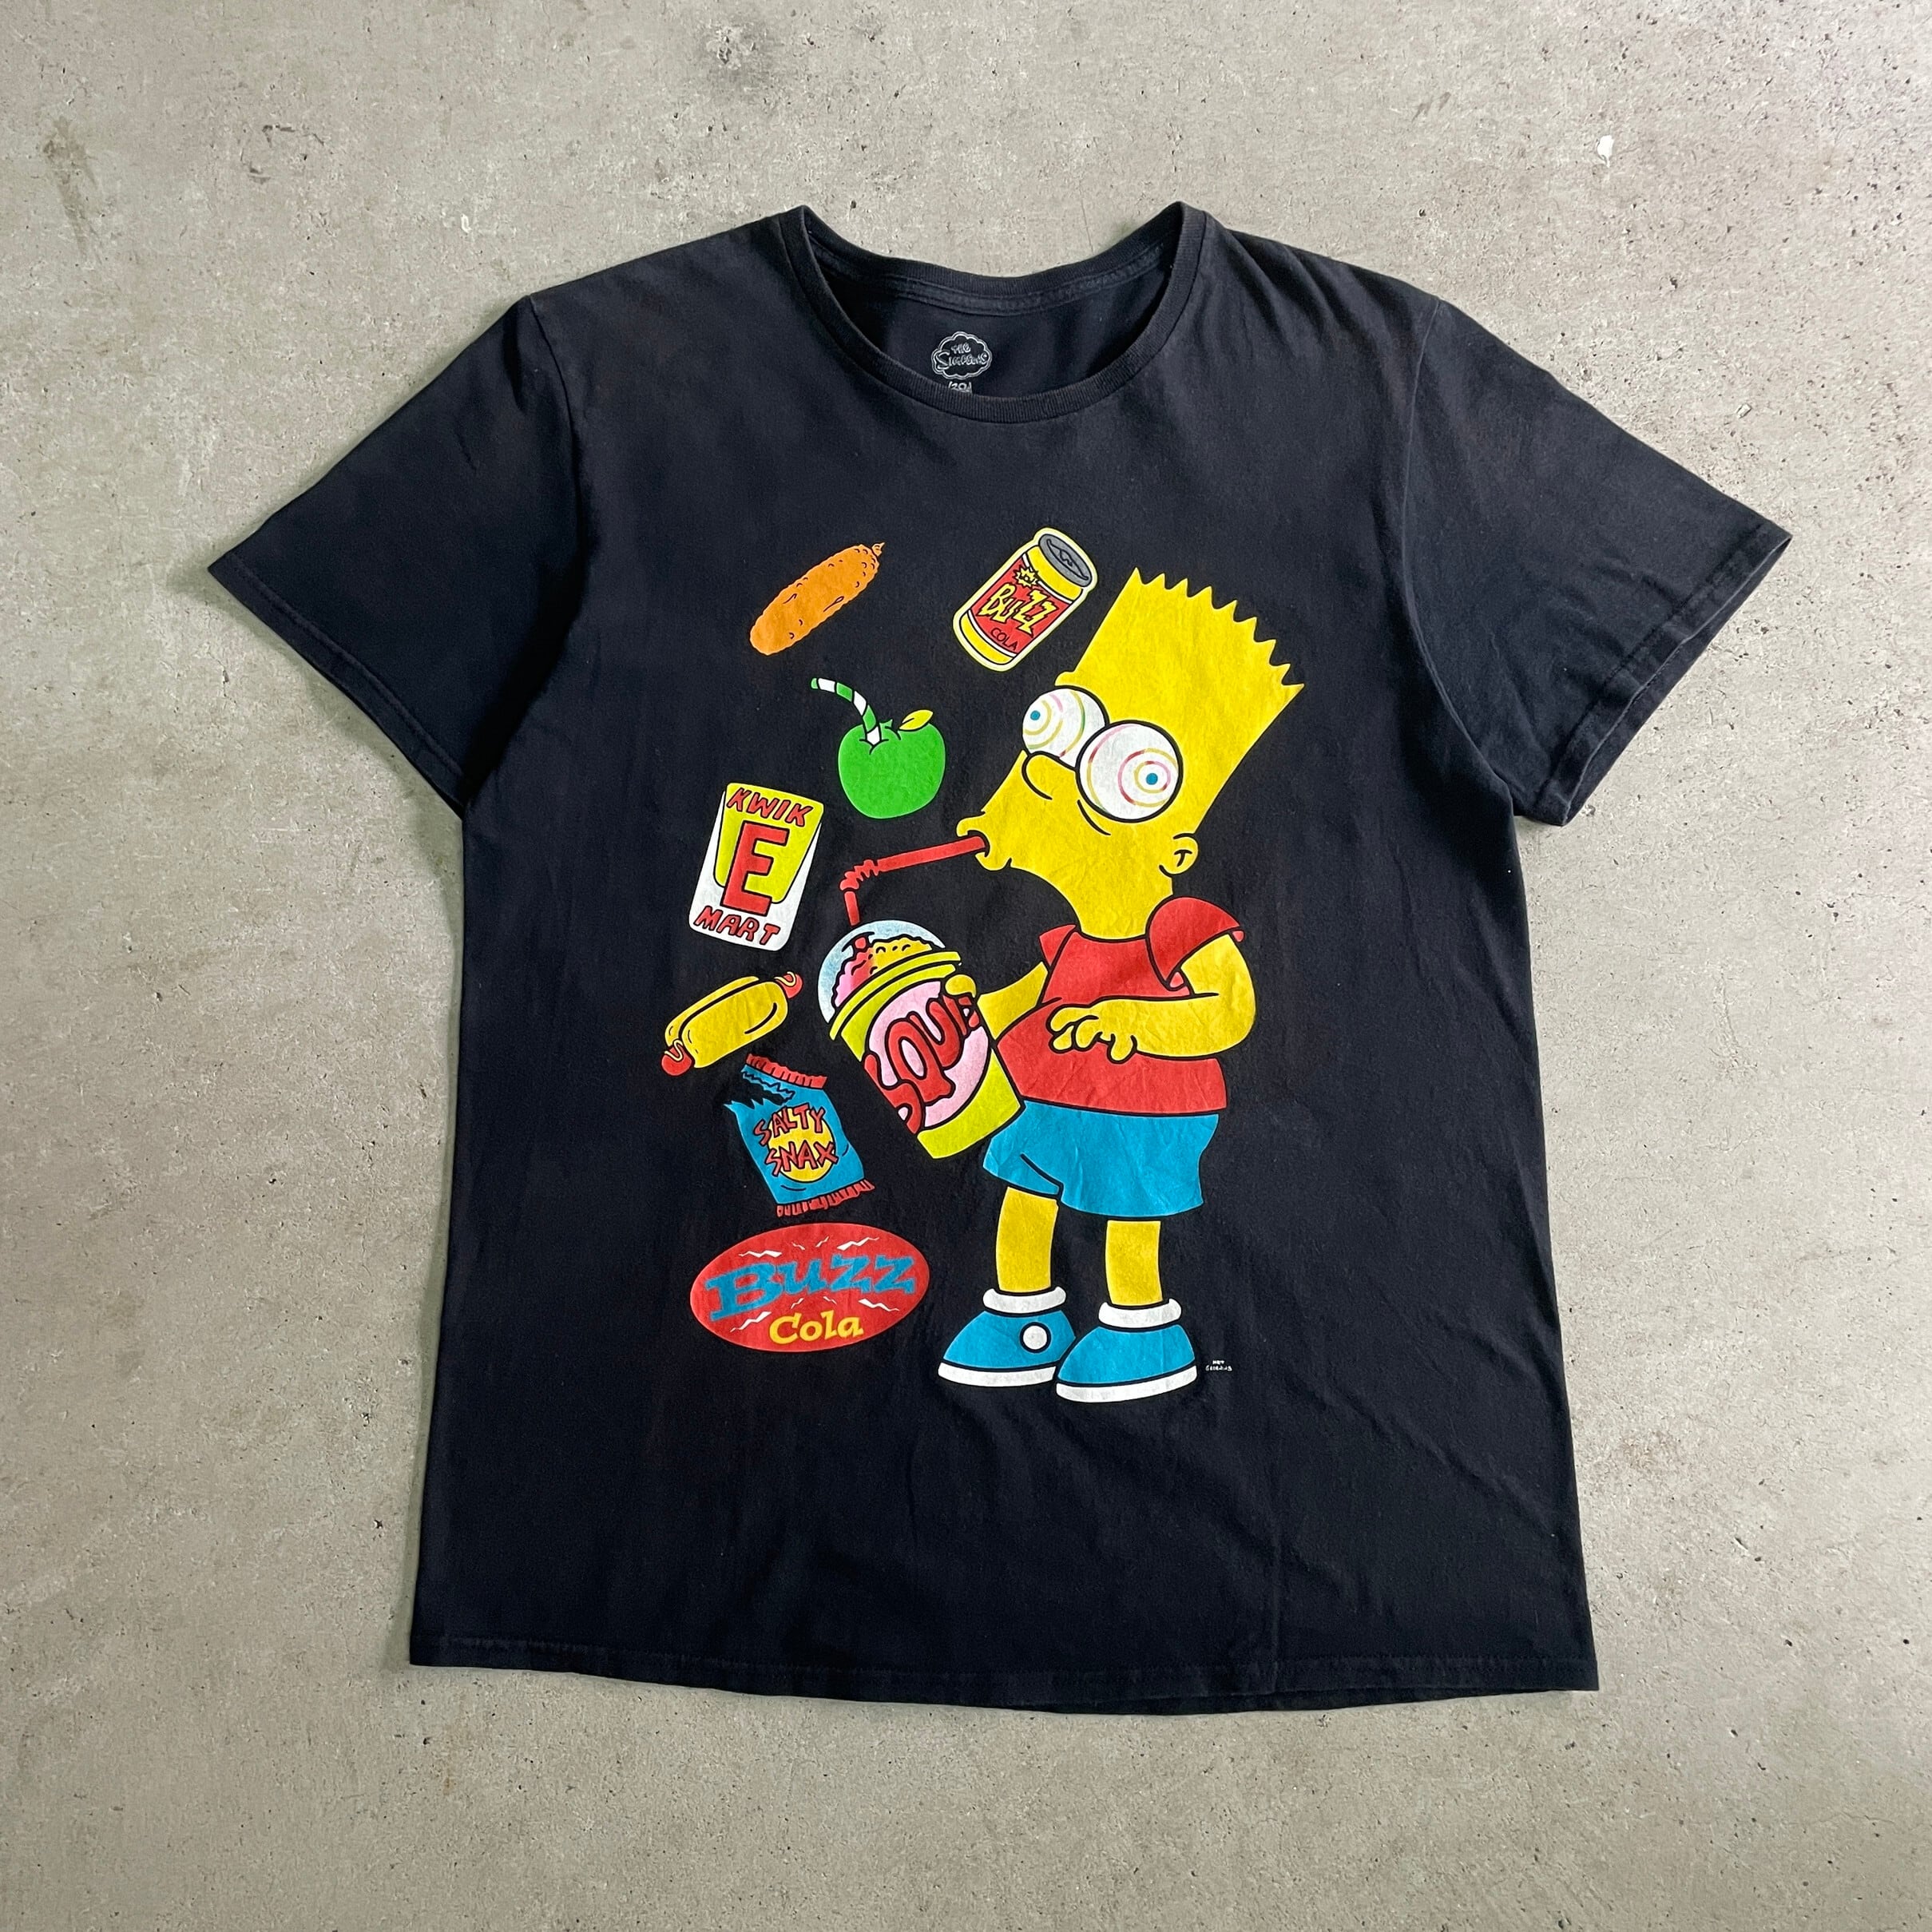 The Simpsons バート・シンプソンズ キャラクター Tシャツ メンズL ...